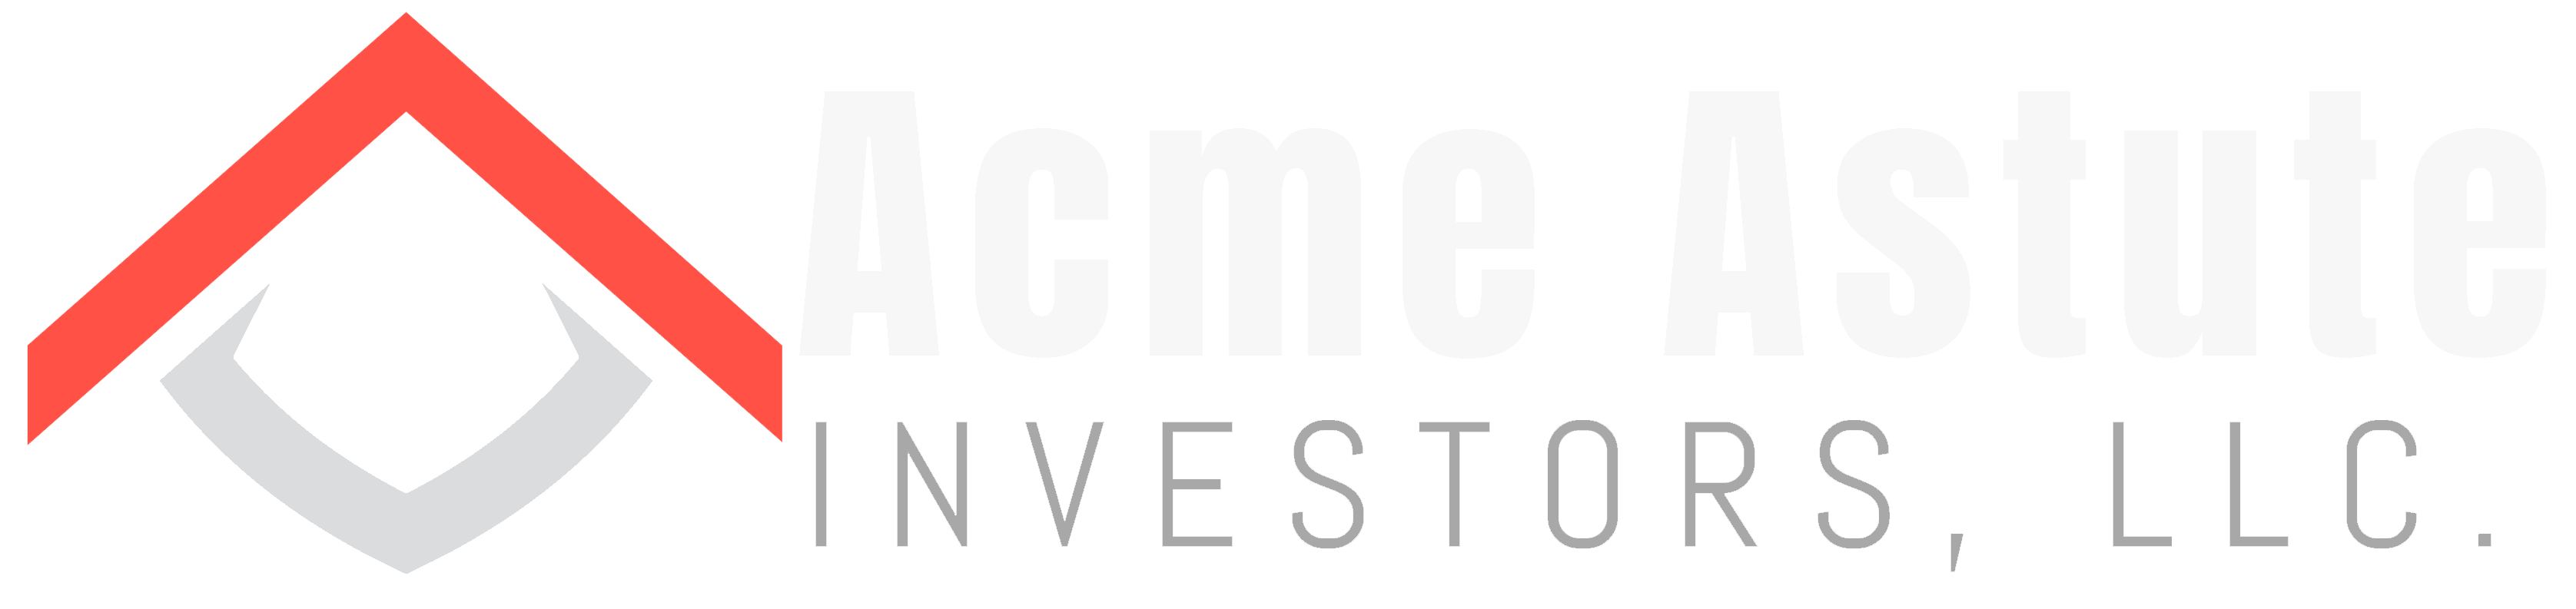 Acme Astute Investors LLCOur Mission